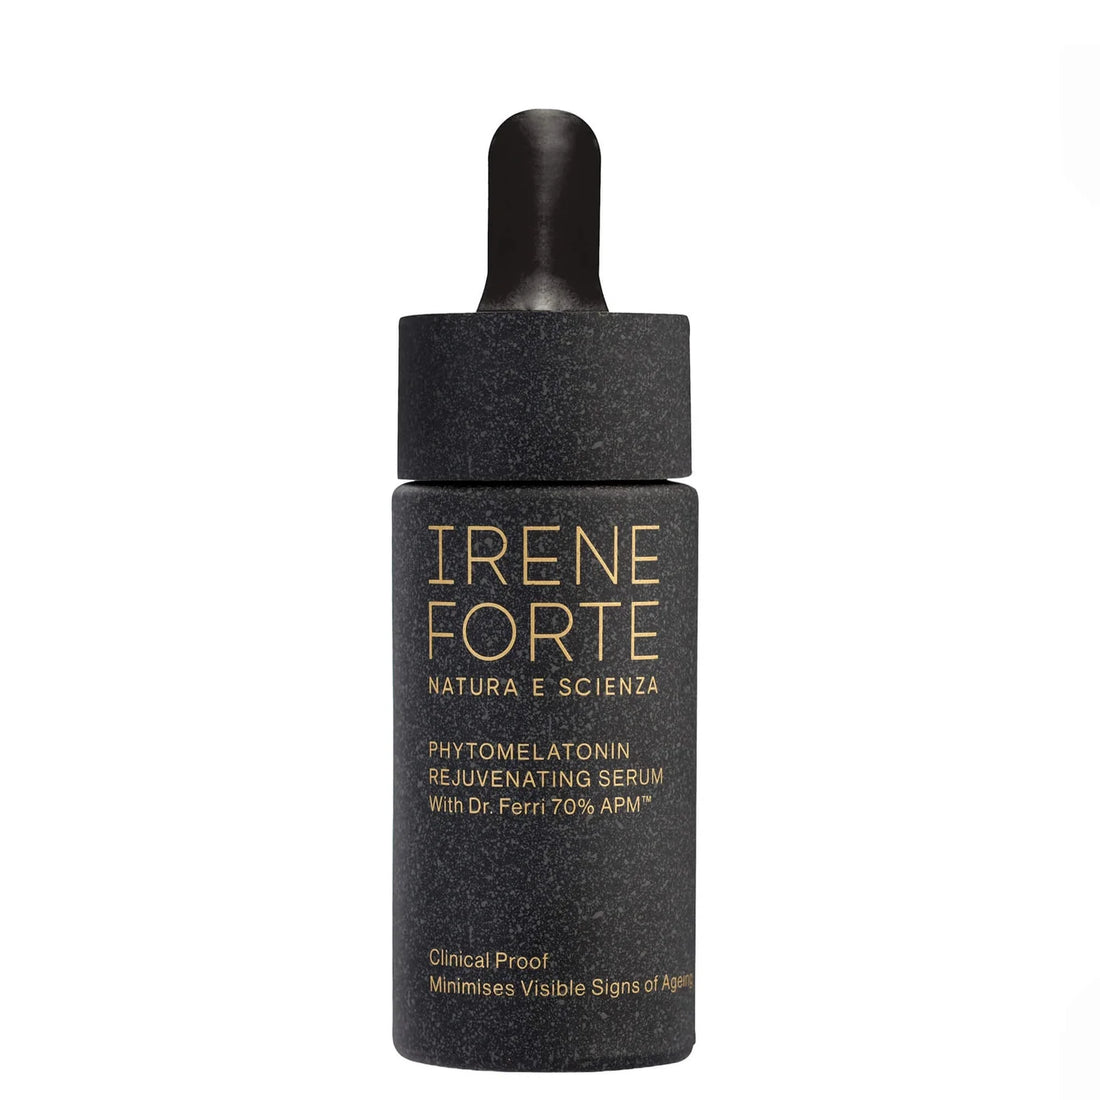 Irene Forte Phytomelatonin Verjüngendes Serum 15 ml